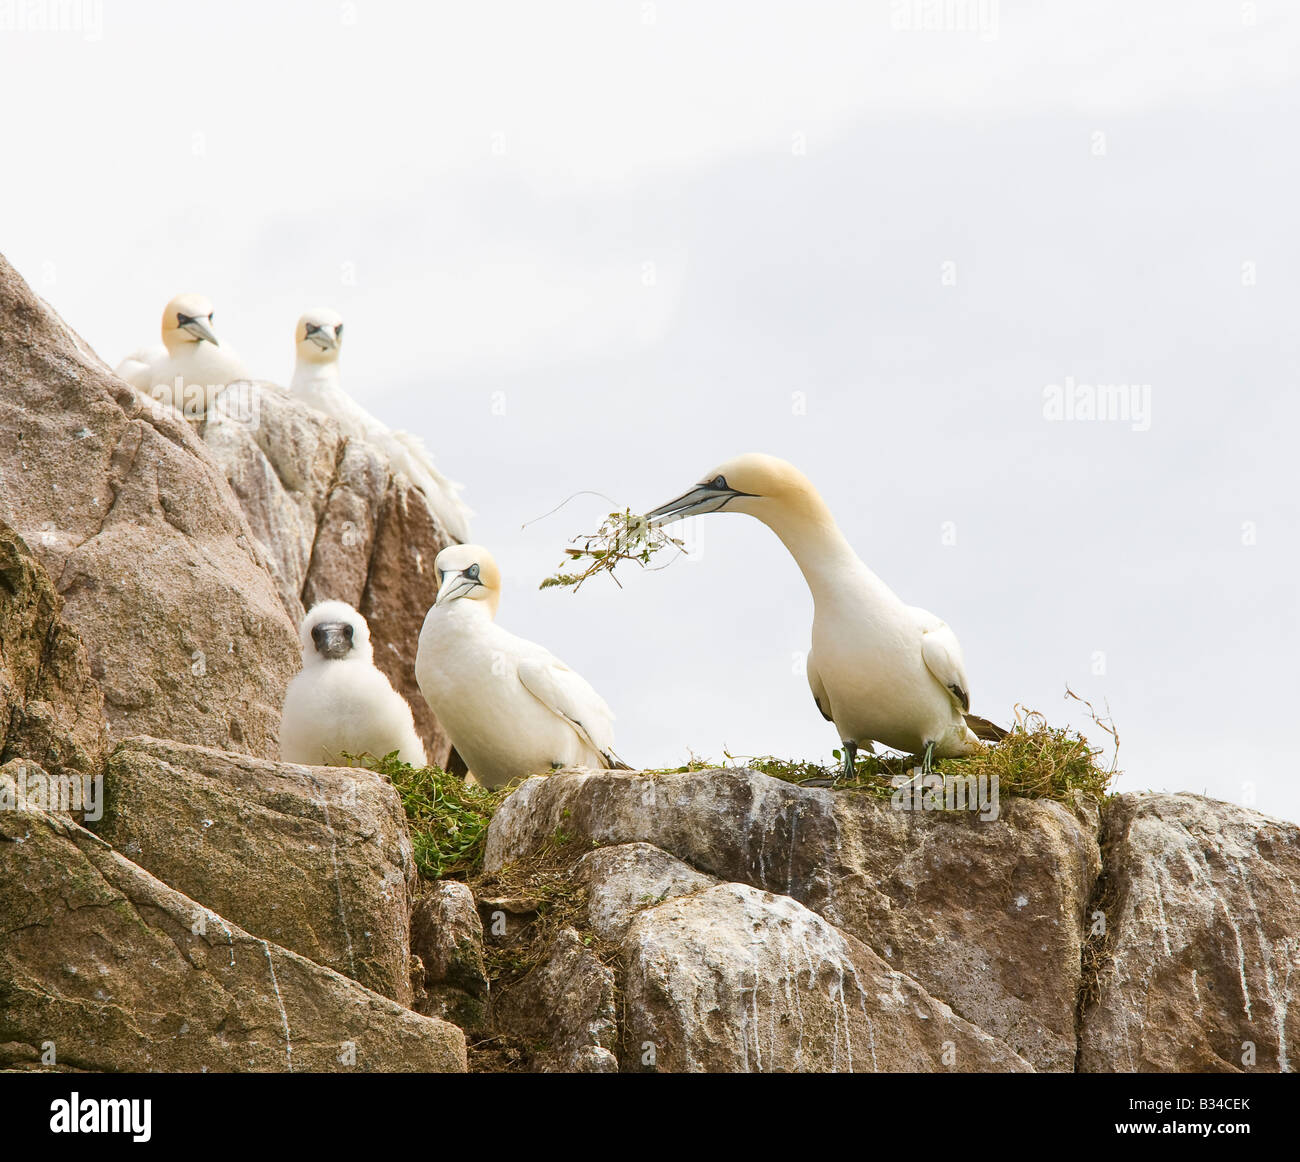 gannetti gannet colonia fagana sula seabirds uccelli niding corteggiamento rituale Foto Stock